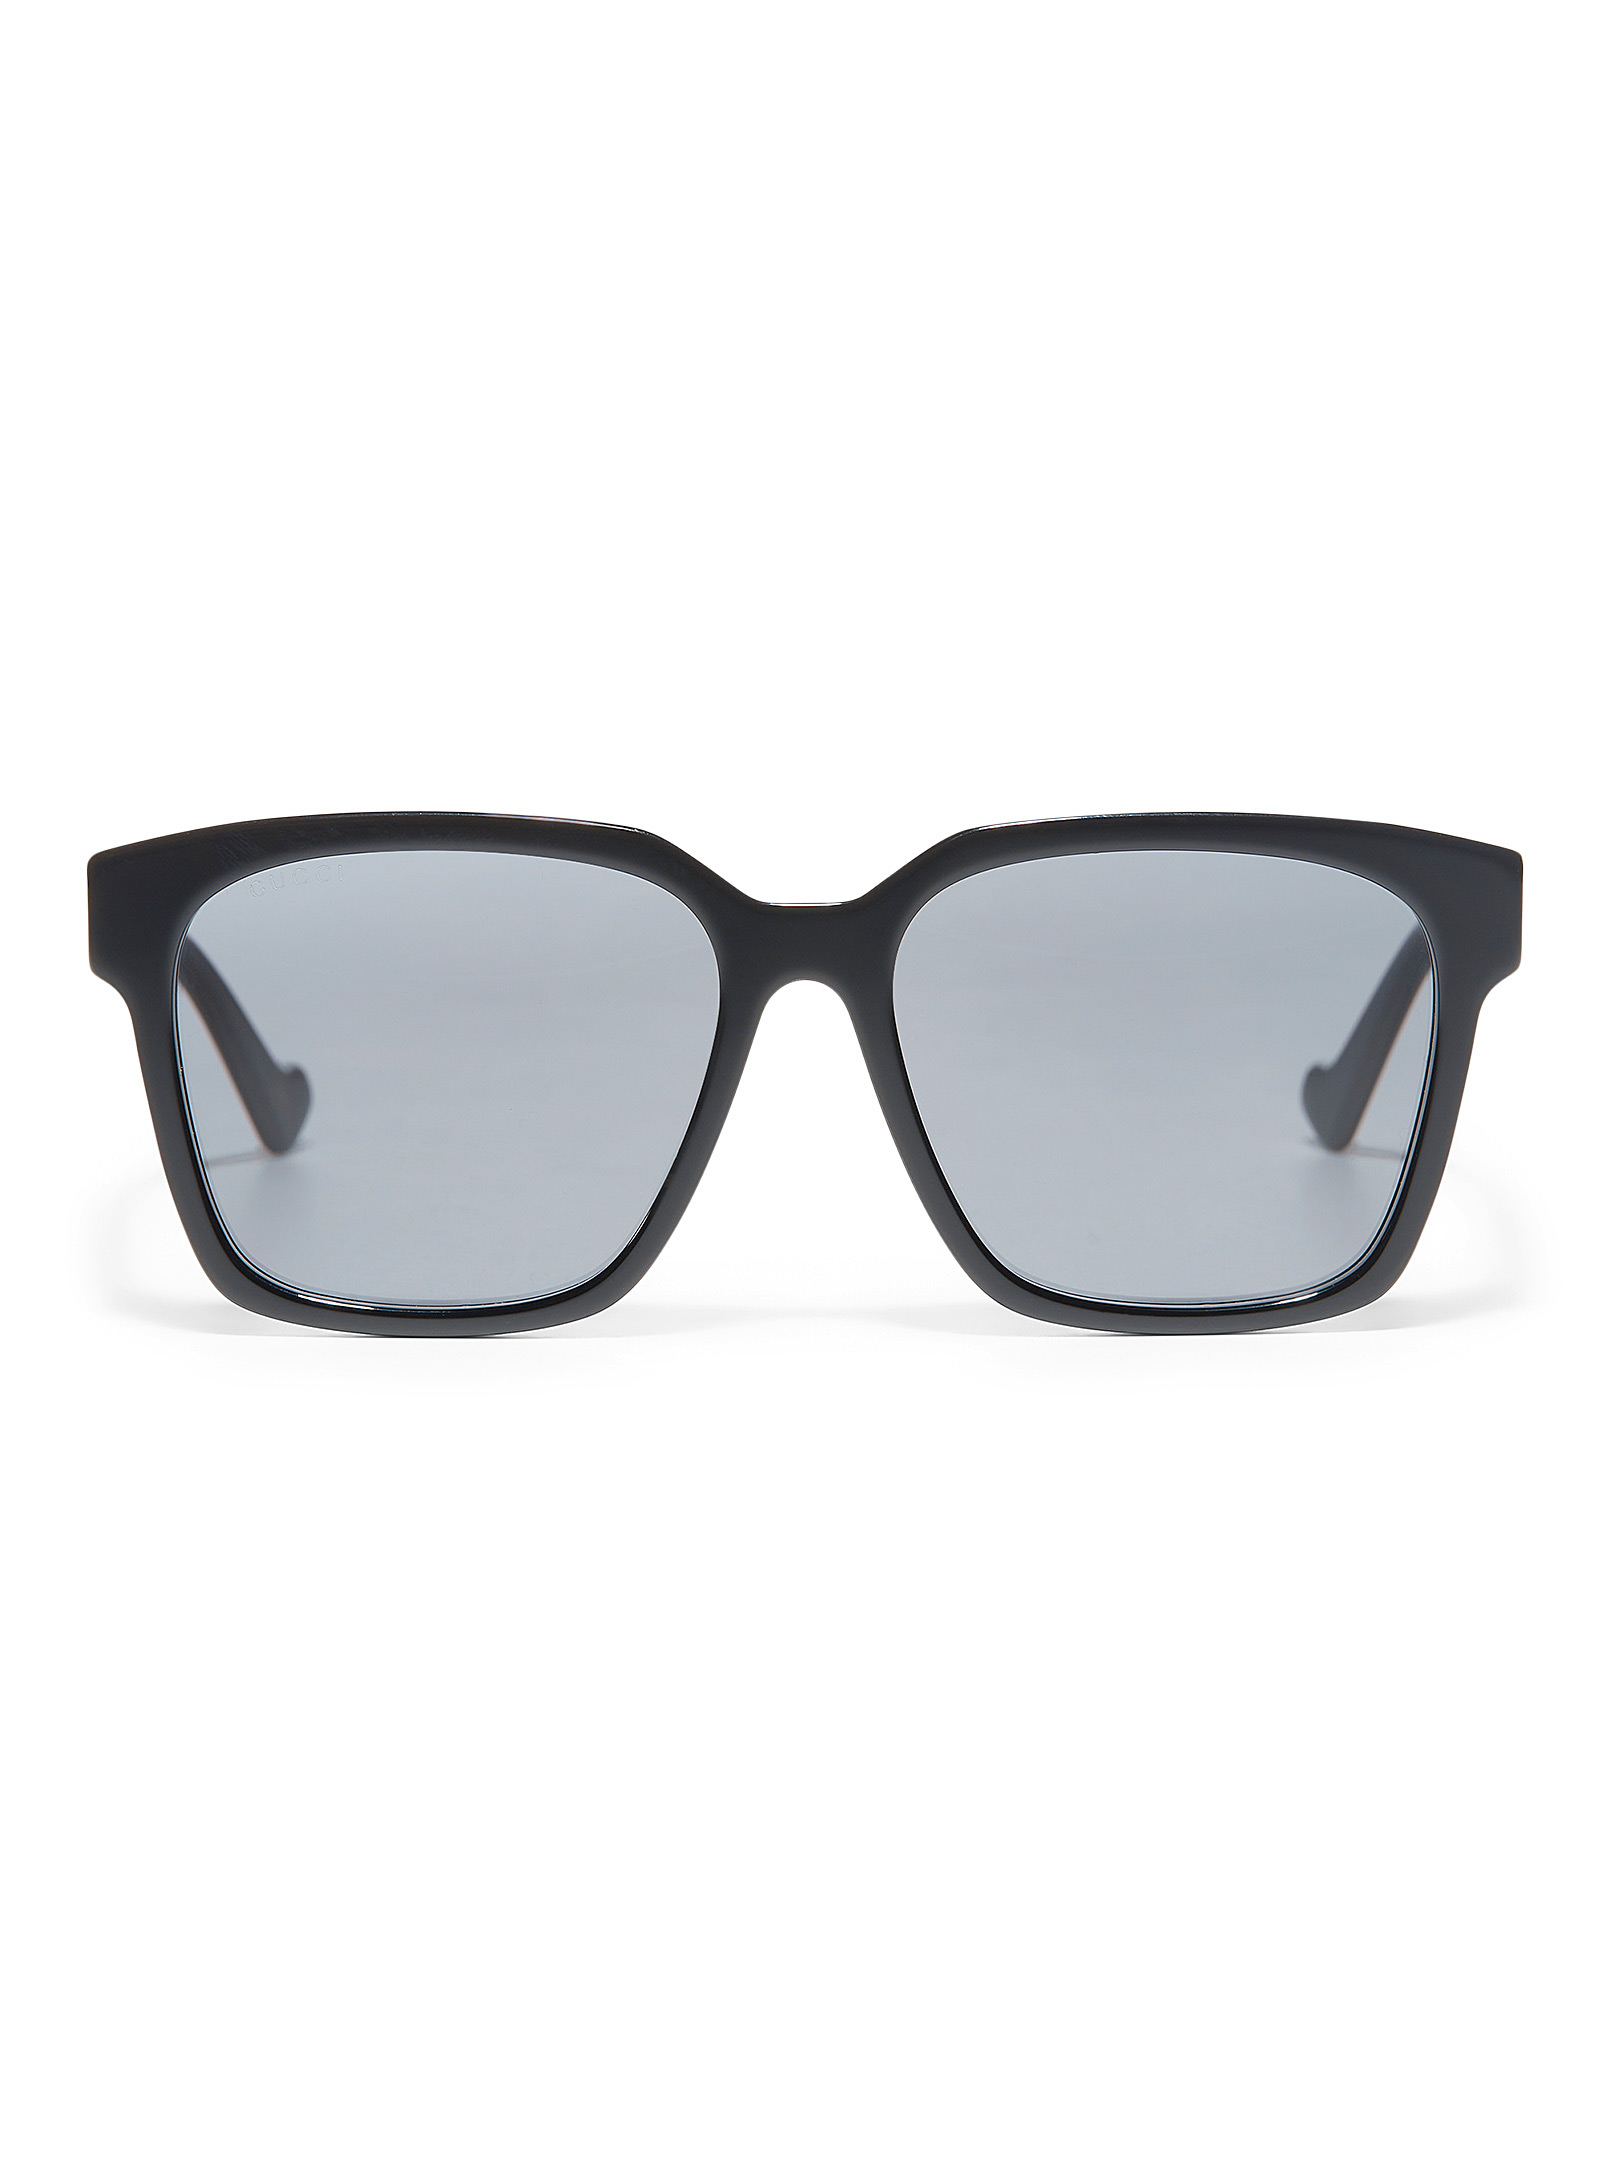 Gucci - Black square sunglasses